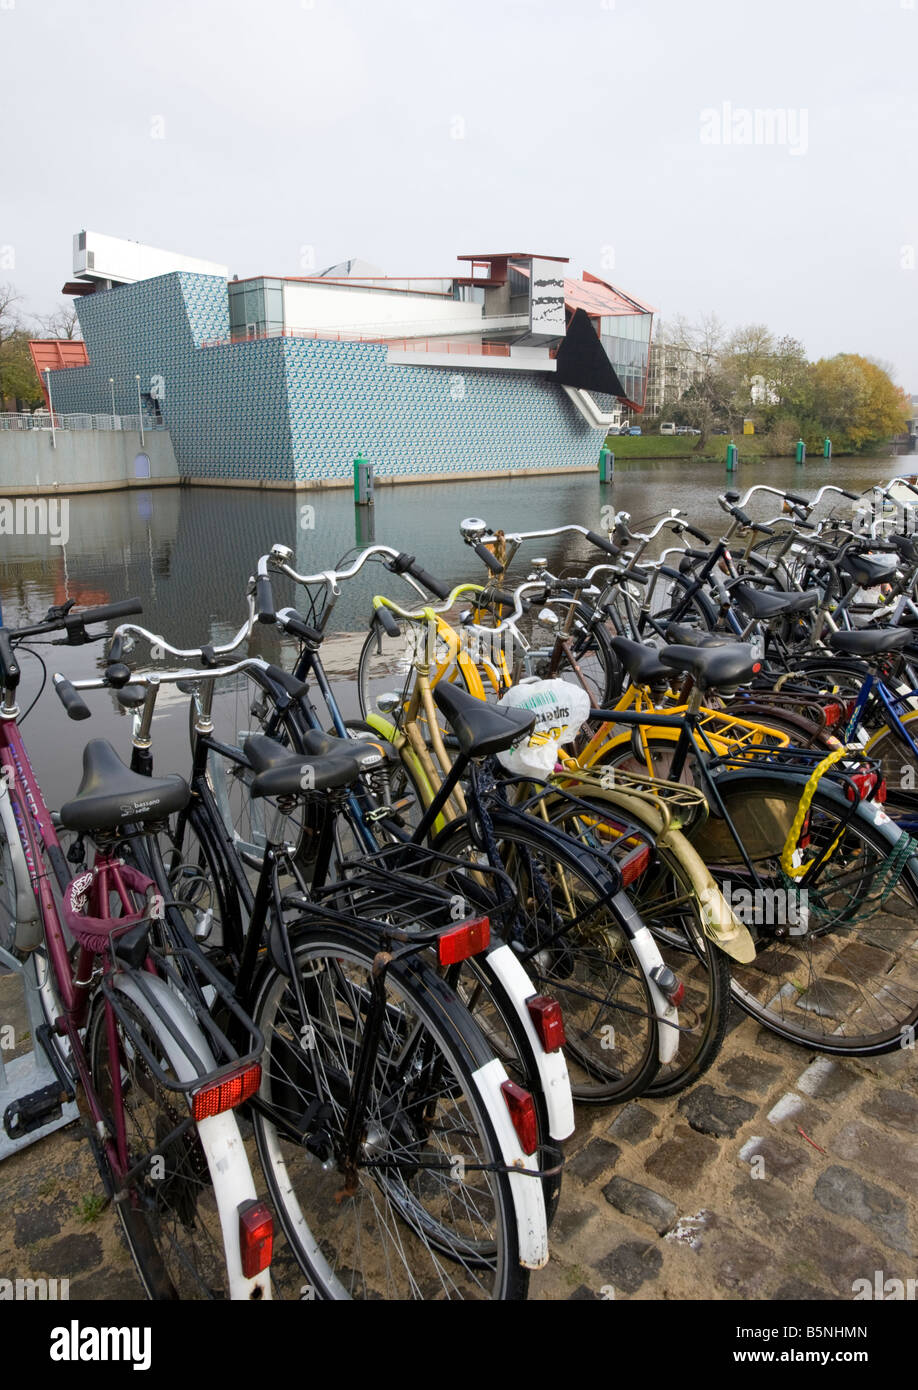 Les vélos garés à côté en face du canal Groninger Museum moderne dans la région de groningen Pays-Bas 2008 Banque D'Images